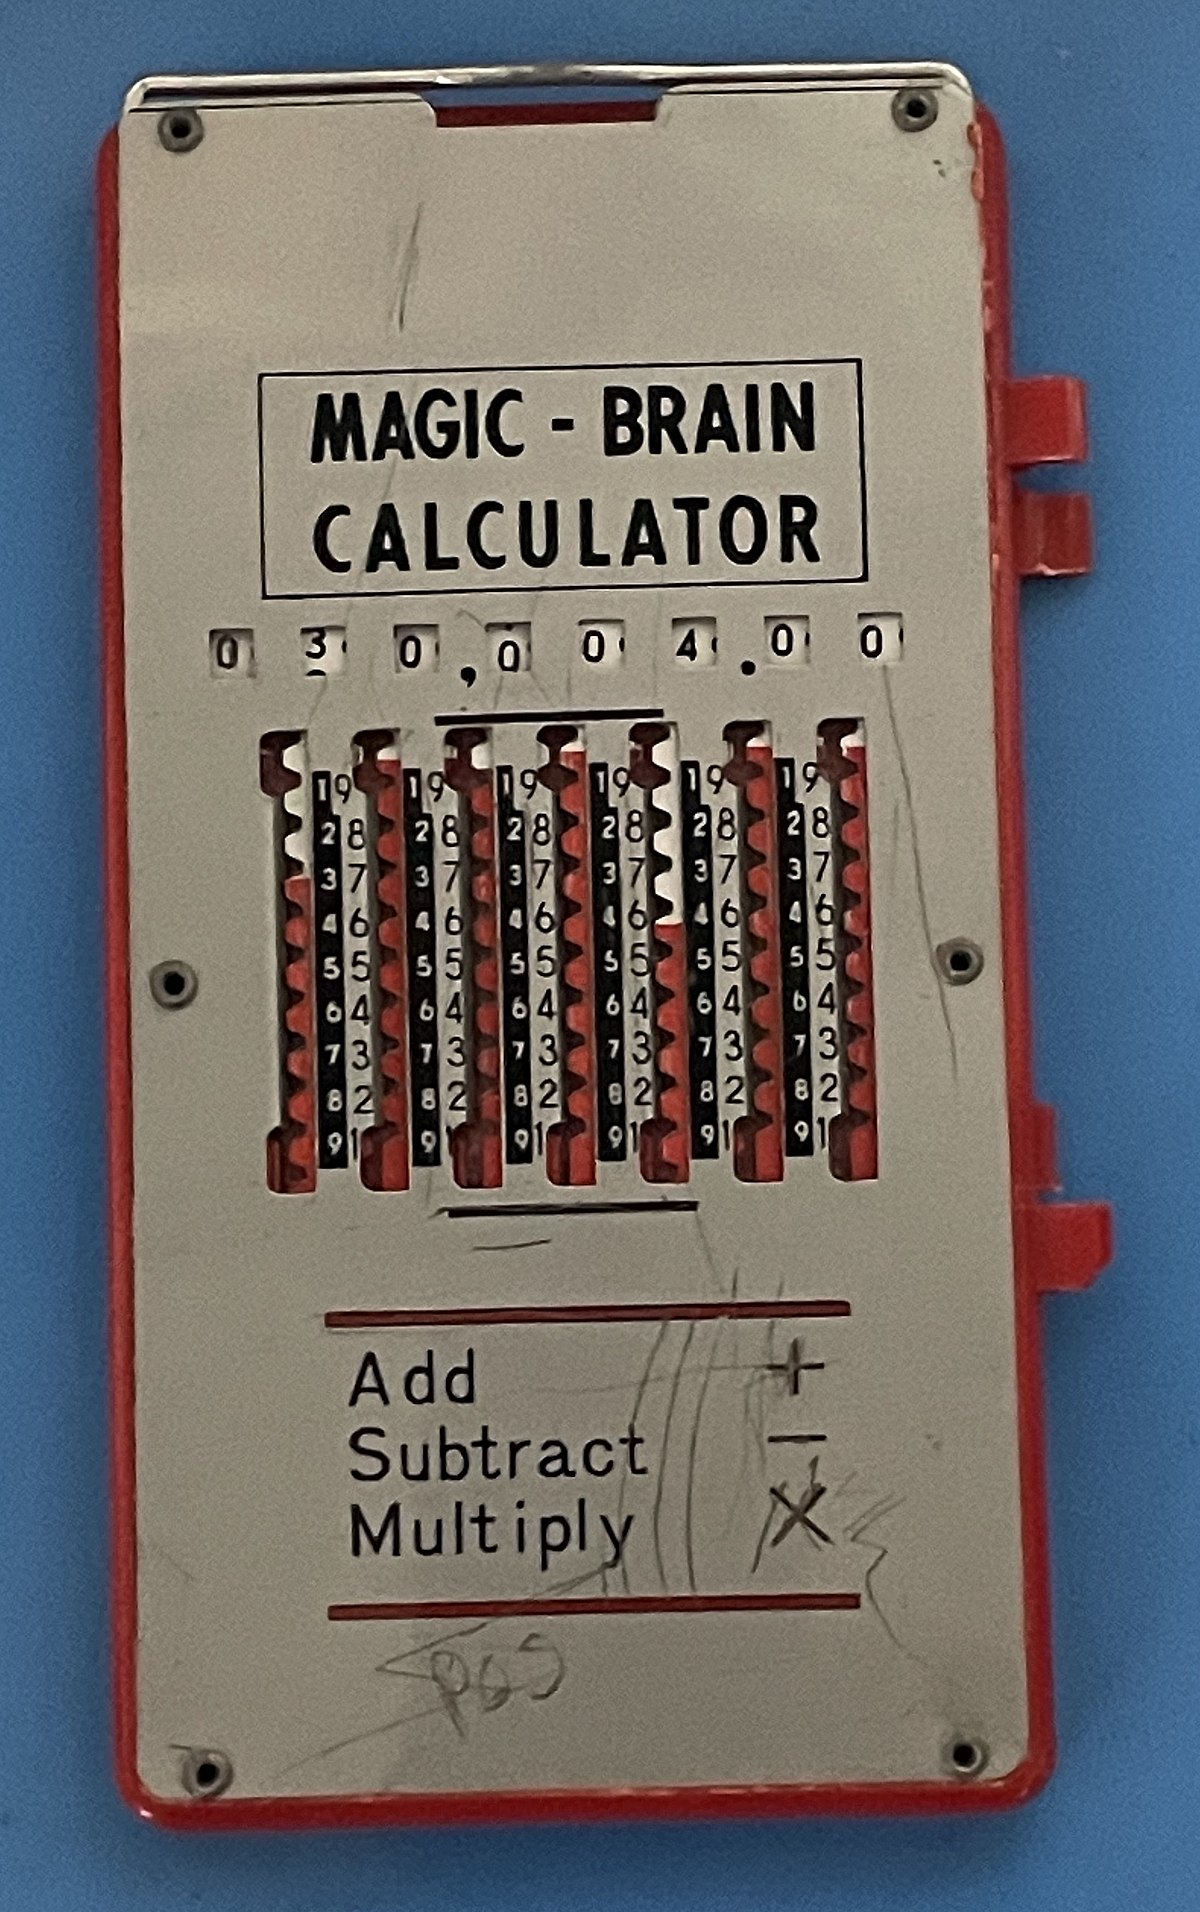 Magic Brain Calculator - How to Add 